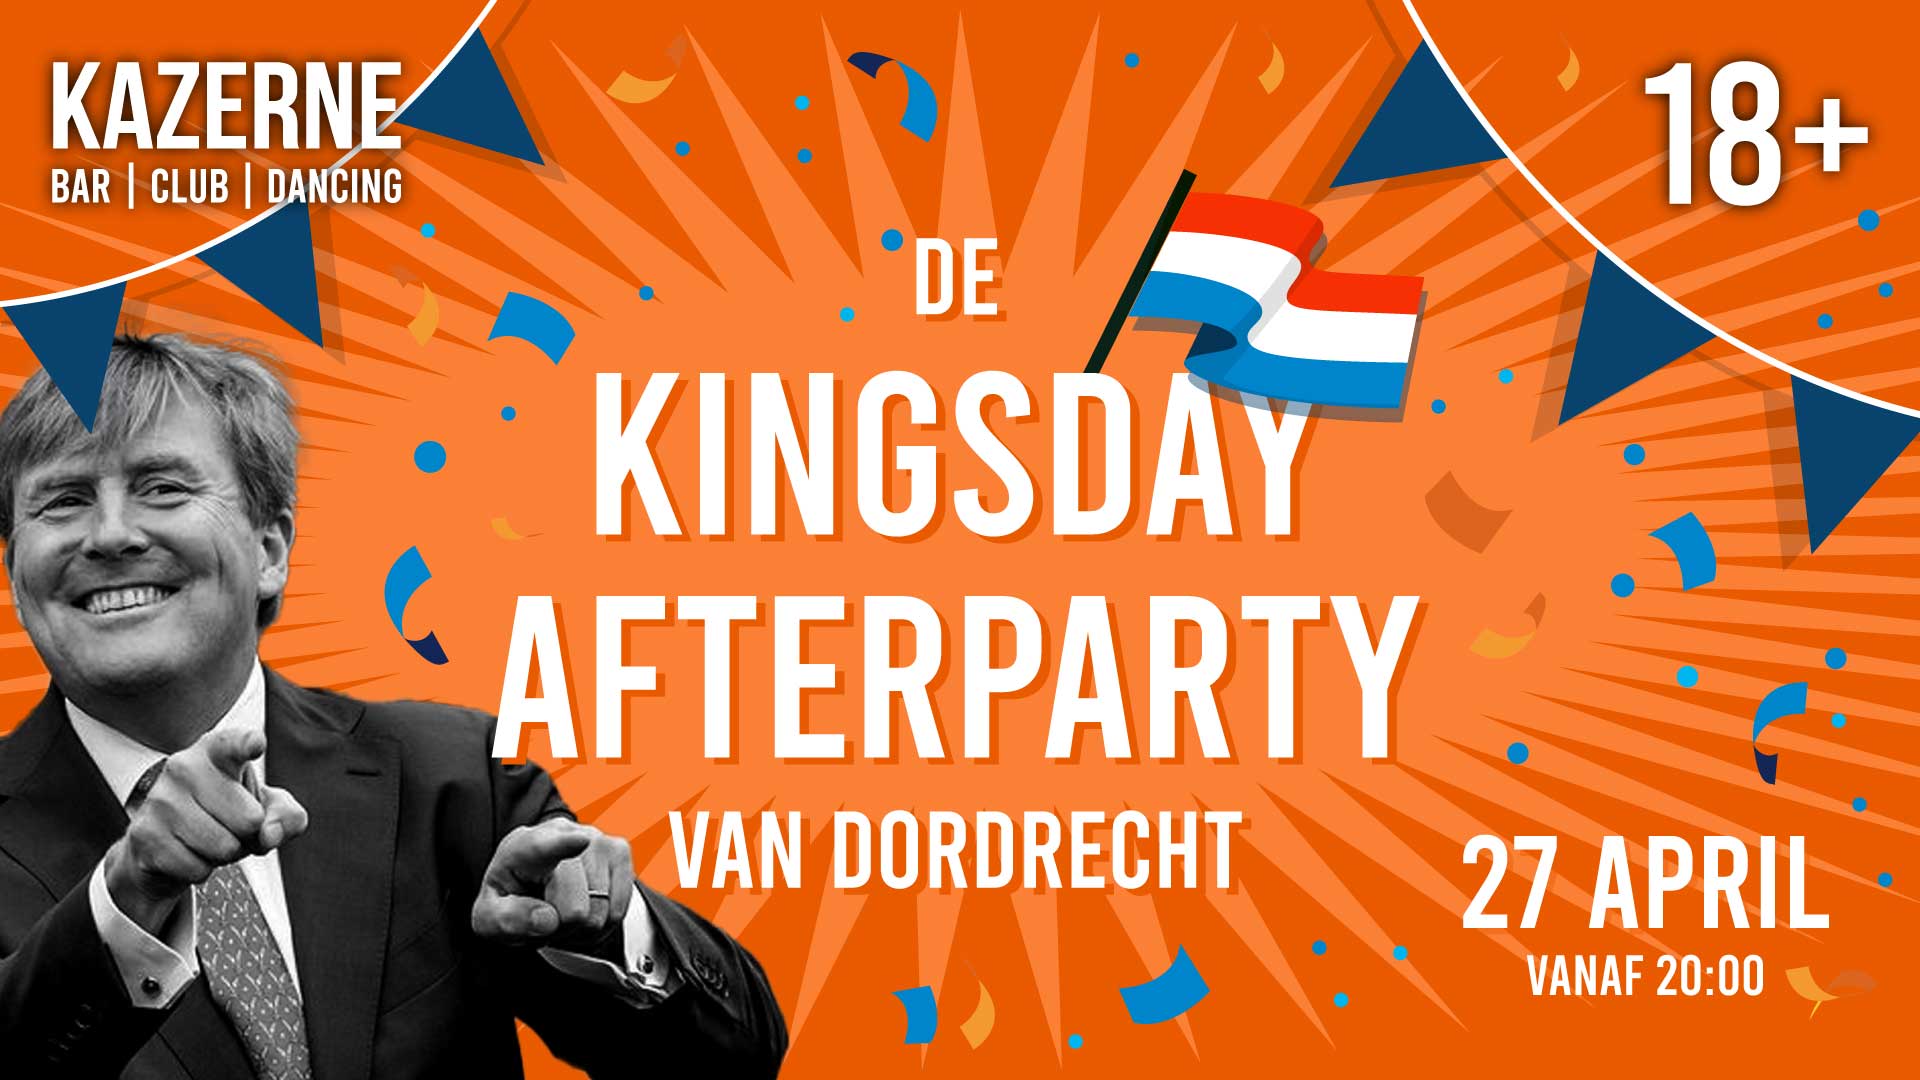 De KINGSDAY AFTERPARTY van Dordrecht! header